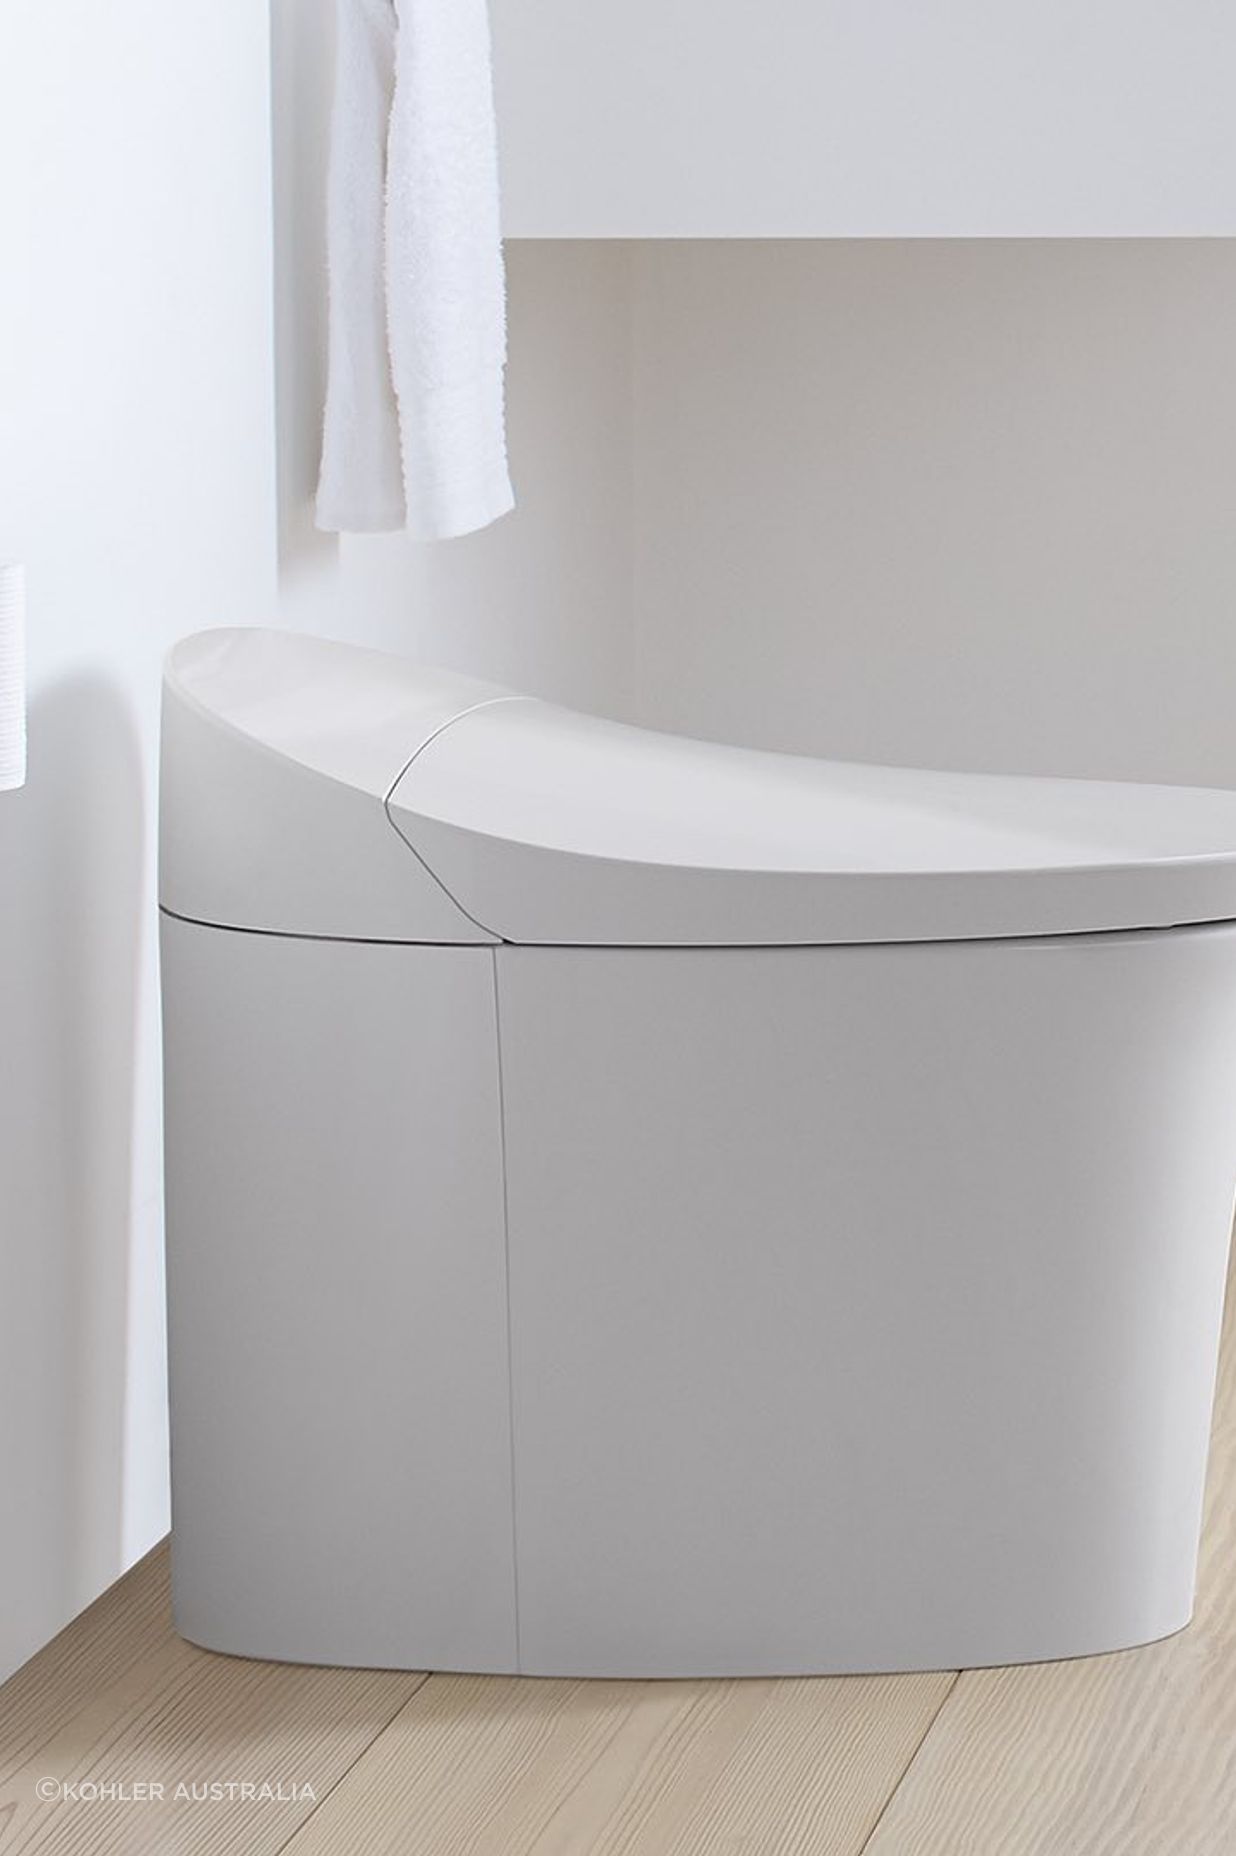 The state-of-the-art Kohler Clean toilet from Kohler Australia